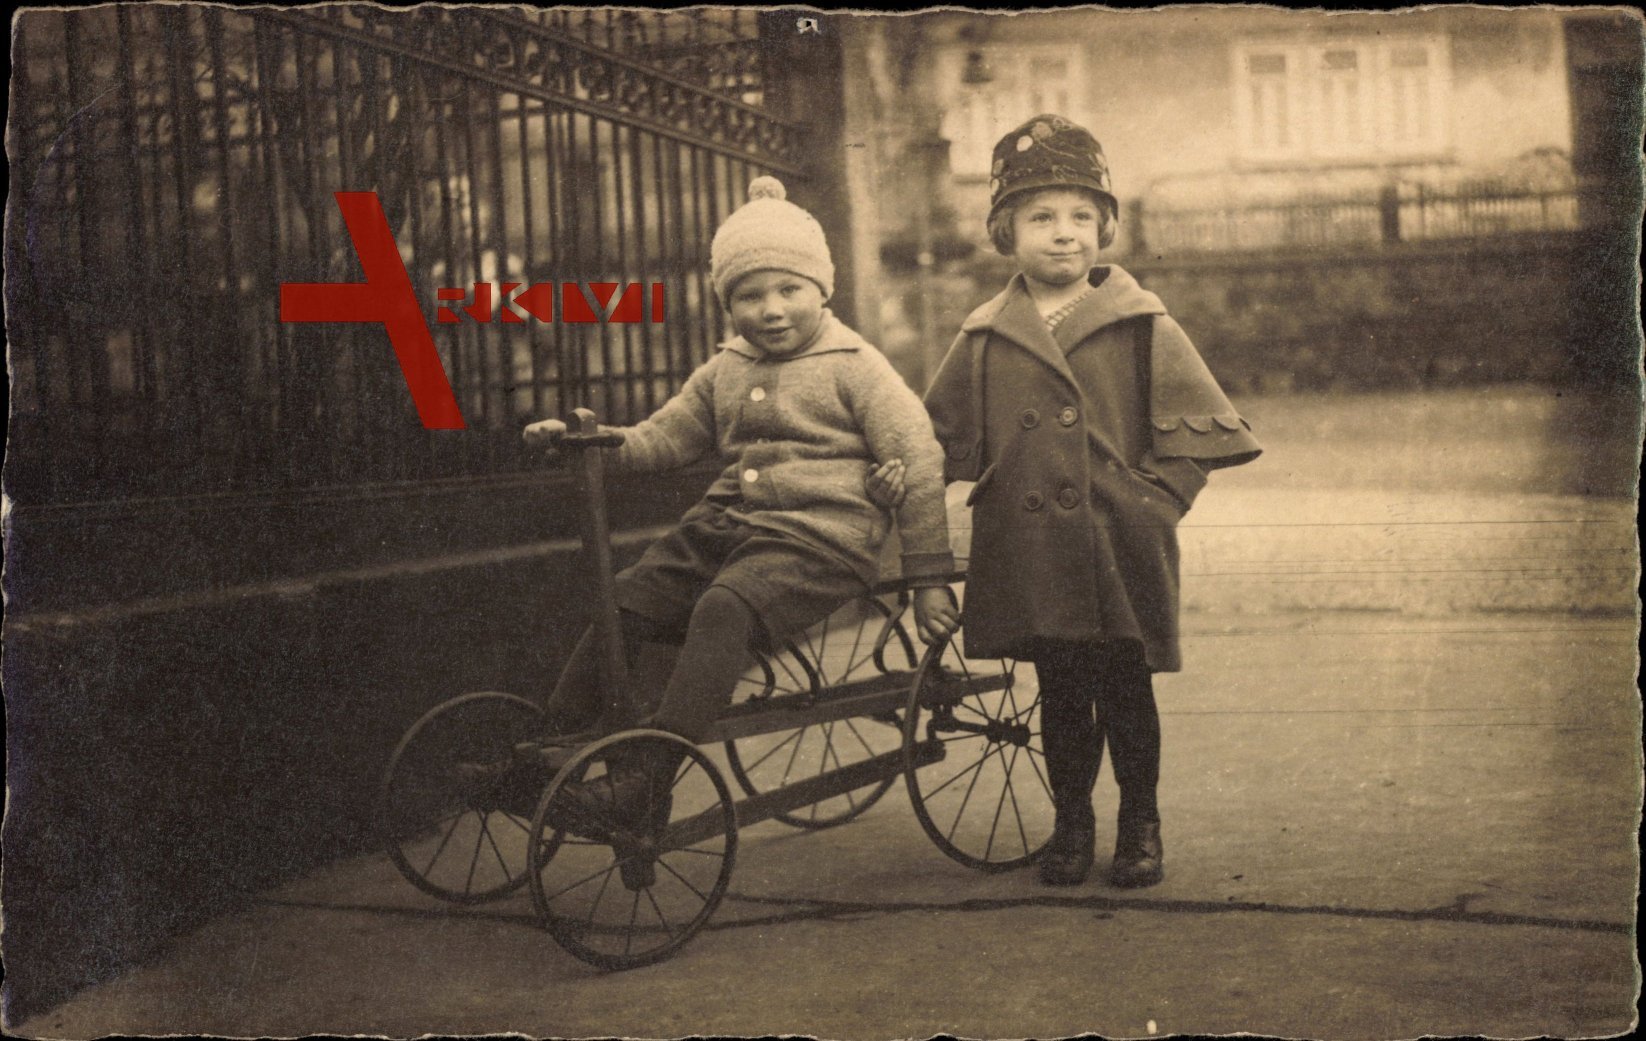 Mädchen und Junge mit einem Vierrad, Spielzeug